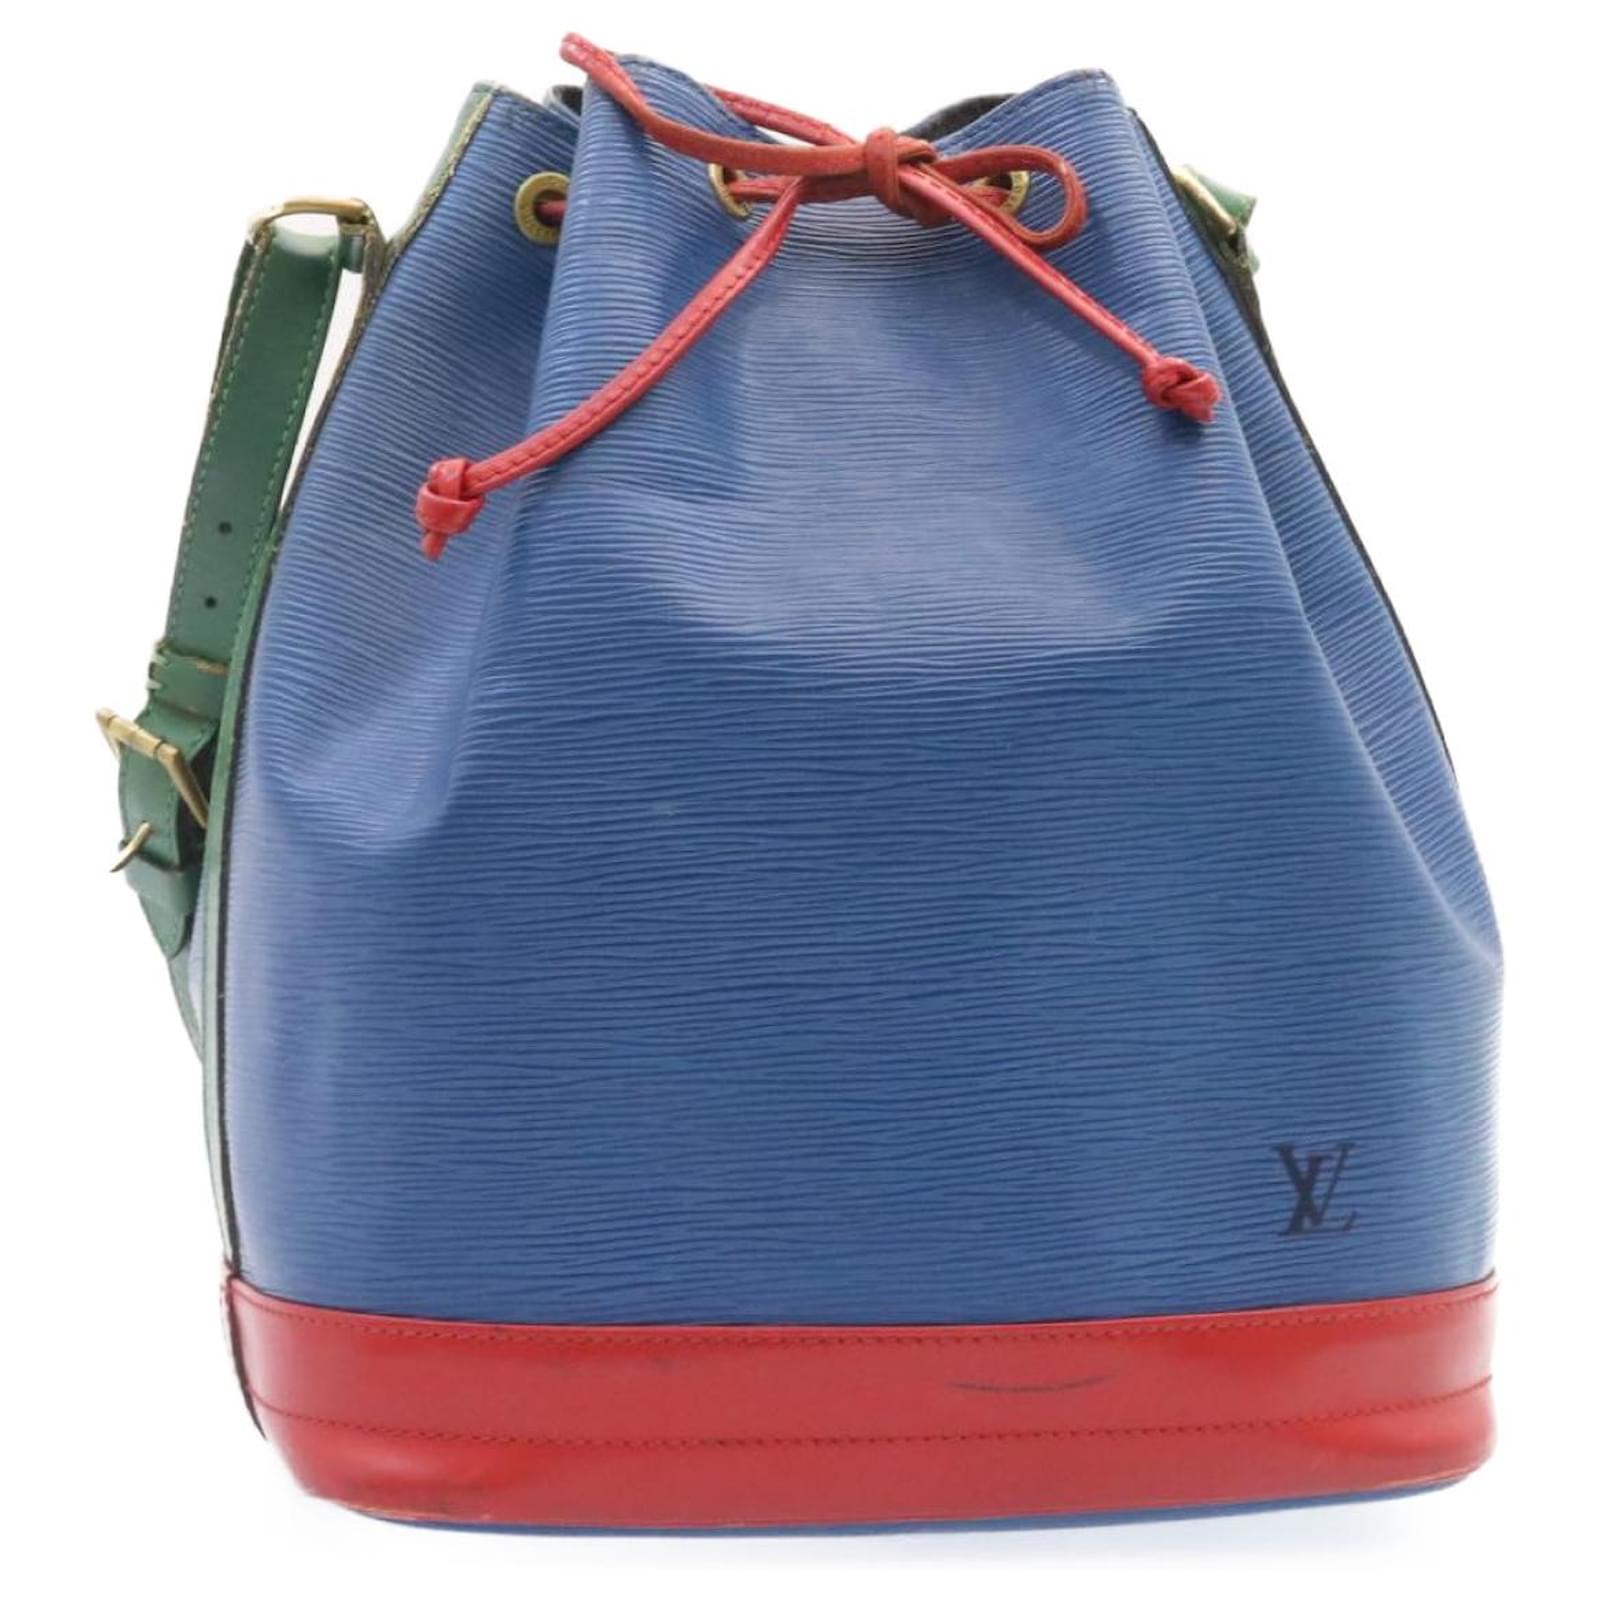 LOUIS VUITTON Epi Tricolor Noe Shoulder Bag Blue Red Green M44082 LV Auth  hs1153